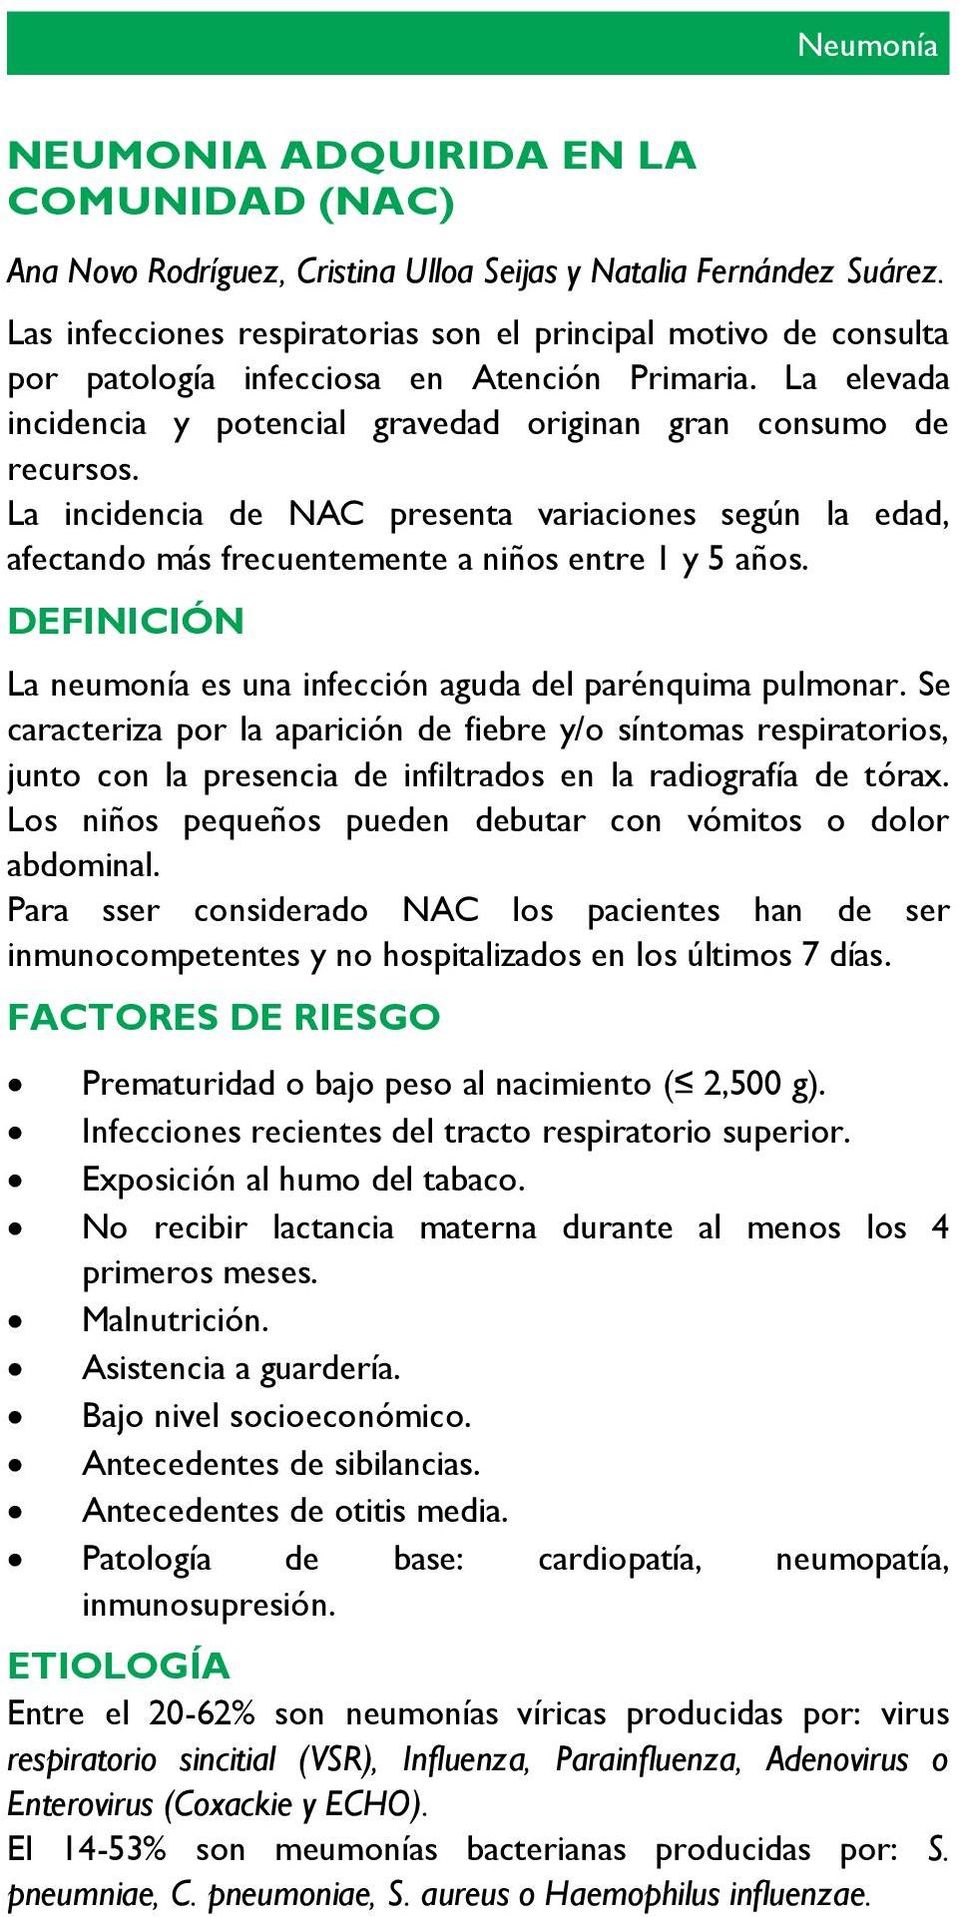 La incidencia de NAC presenta variaciones según la edad, afectando más frecuentemente a niños entre 1 y 5 años. DEFINICIÓN La neumonía es una infección aguda del parénquima pulmonar.